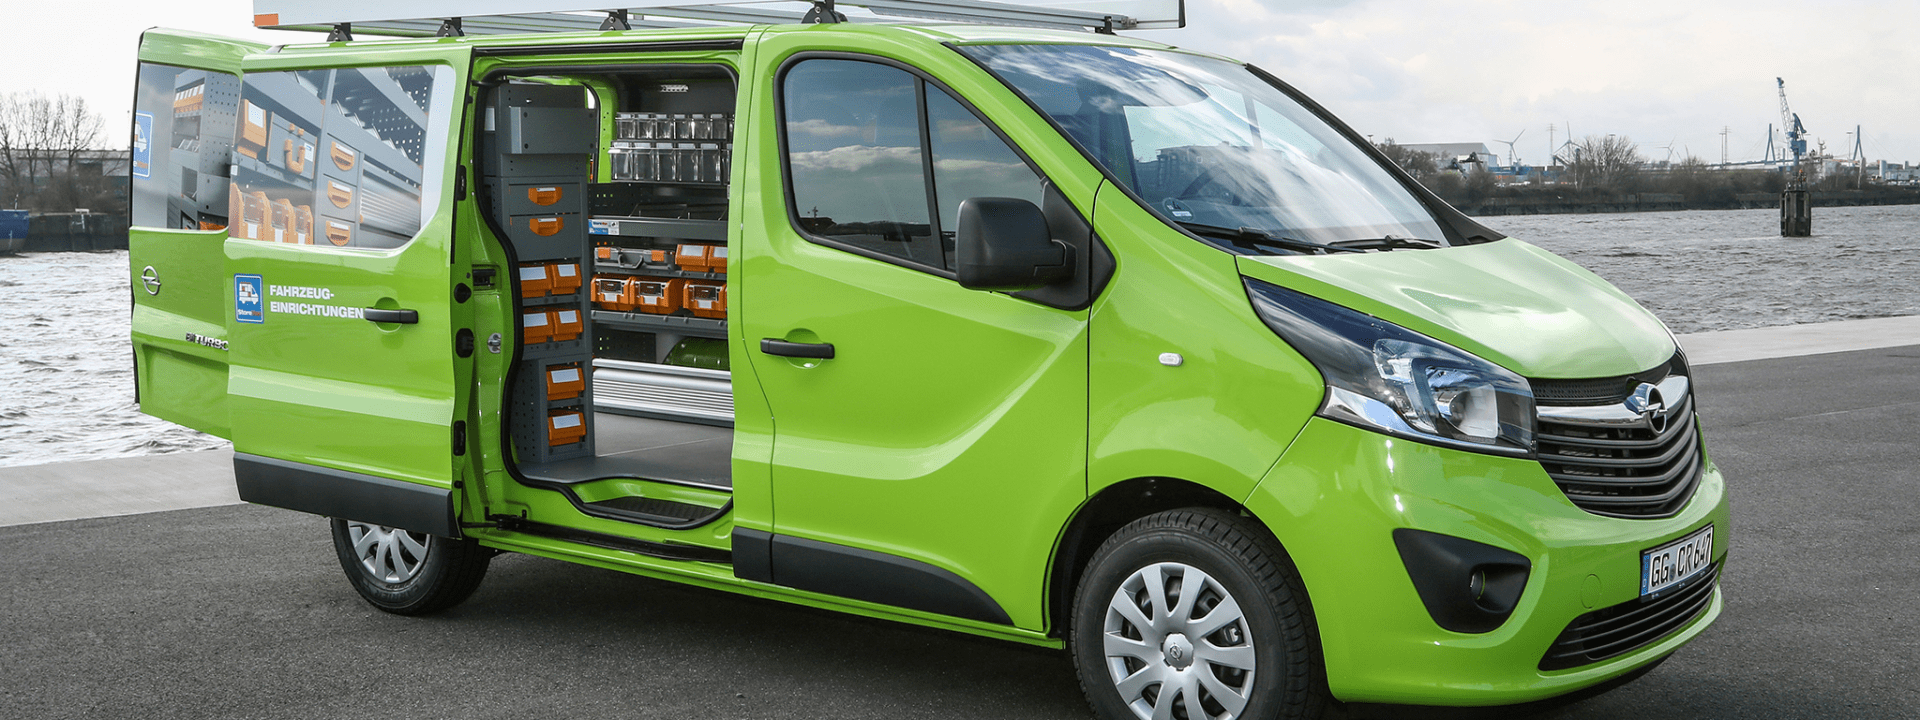 Foto: Opel Vivaro con equipamiento de vehículo comercial Bott